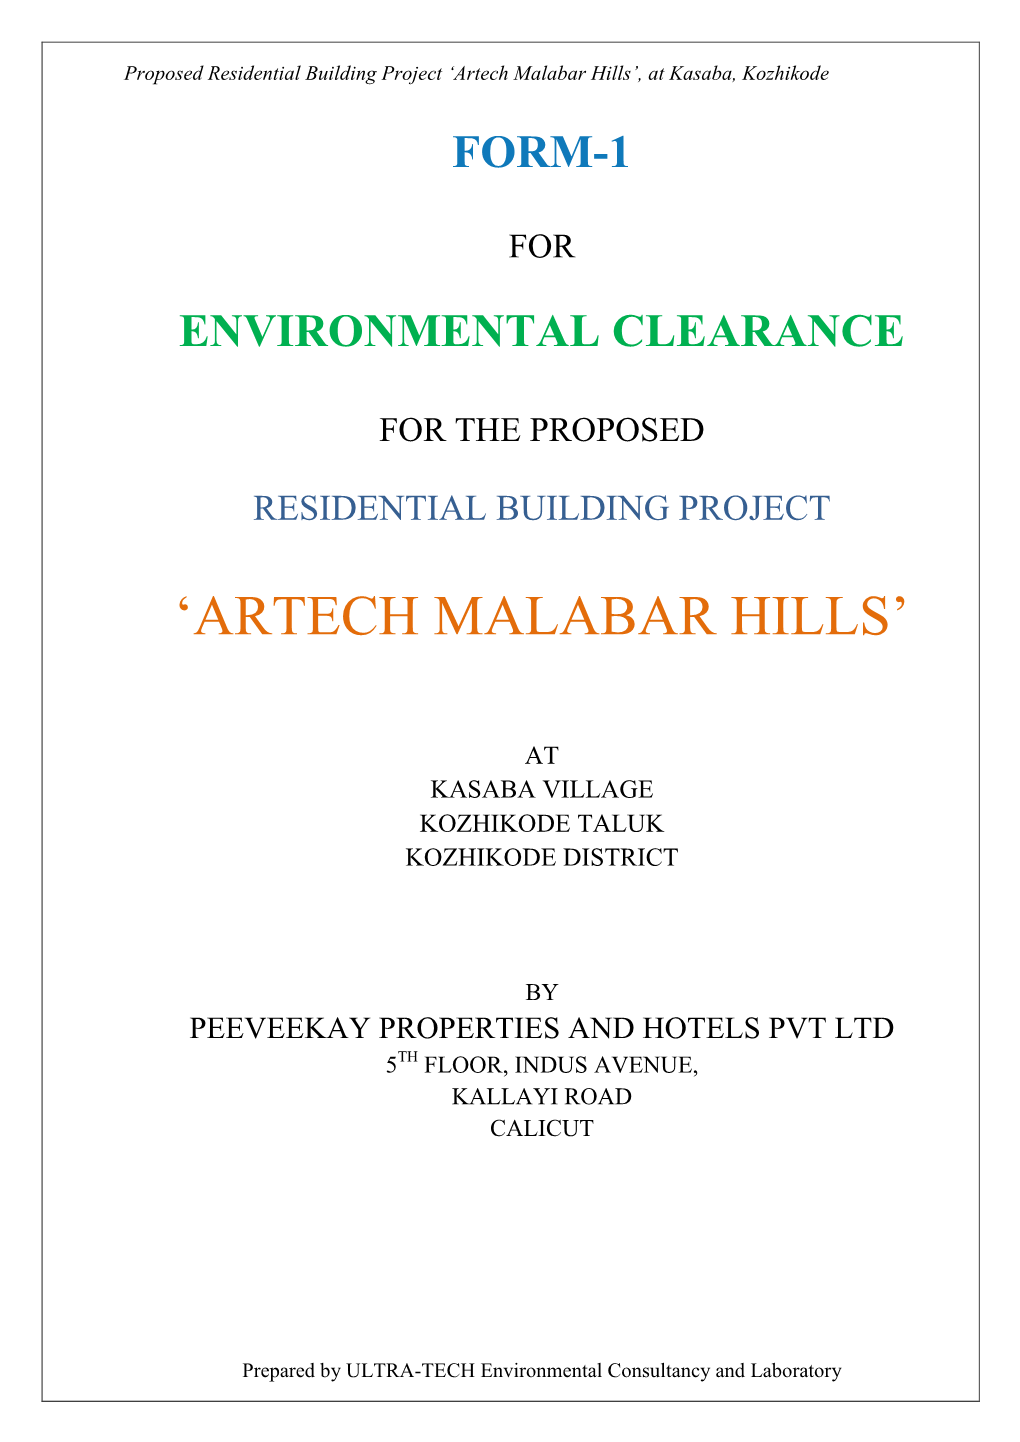 'Artech Malabar Hills'